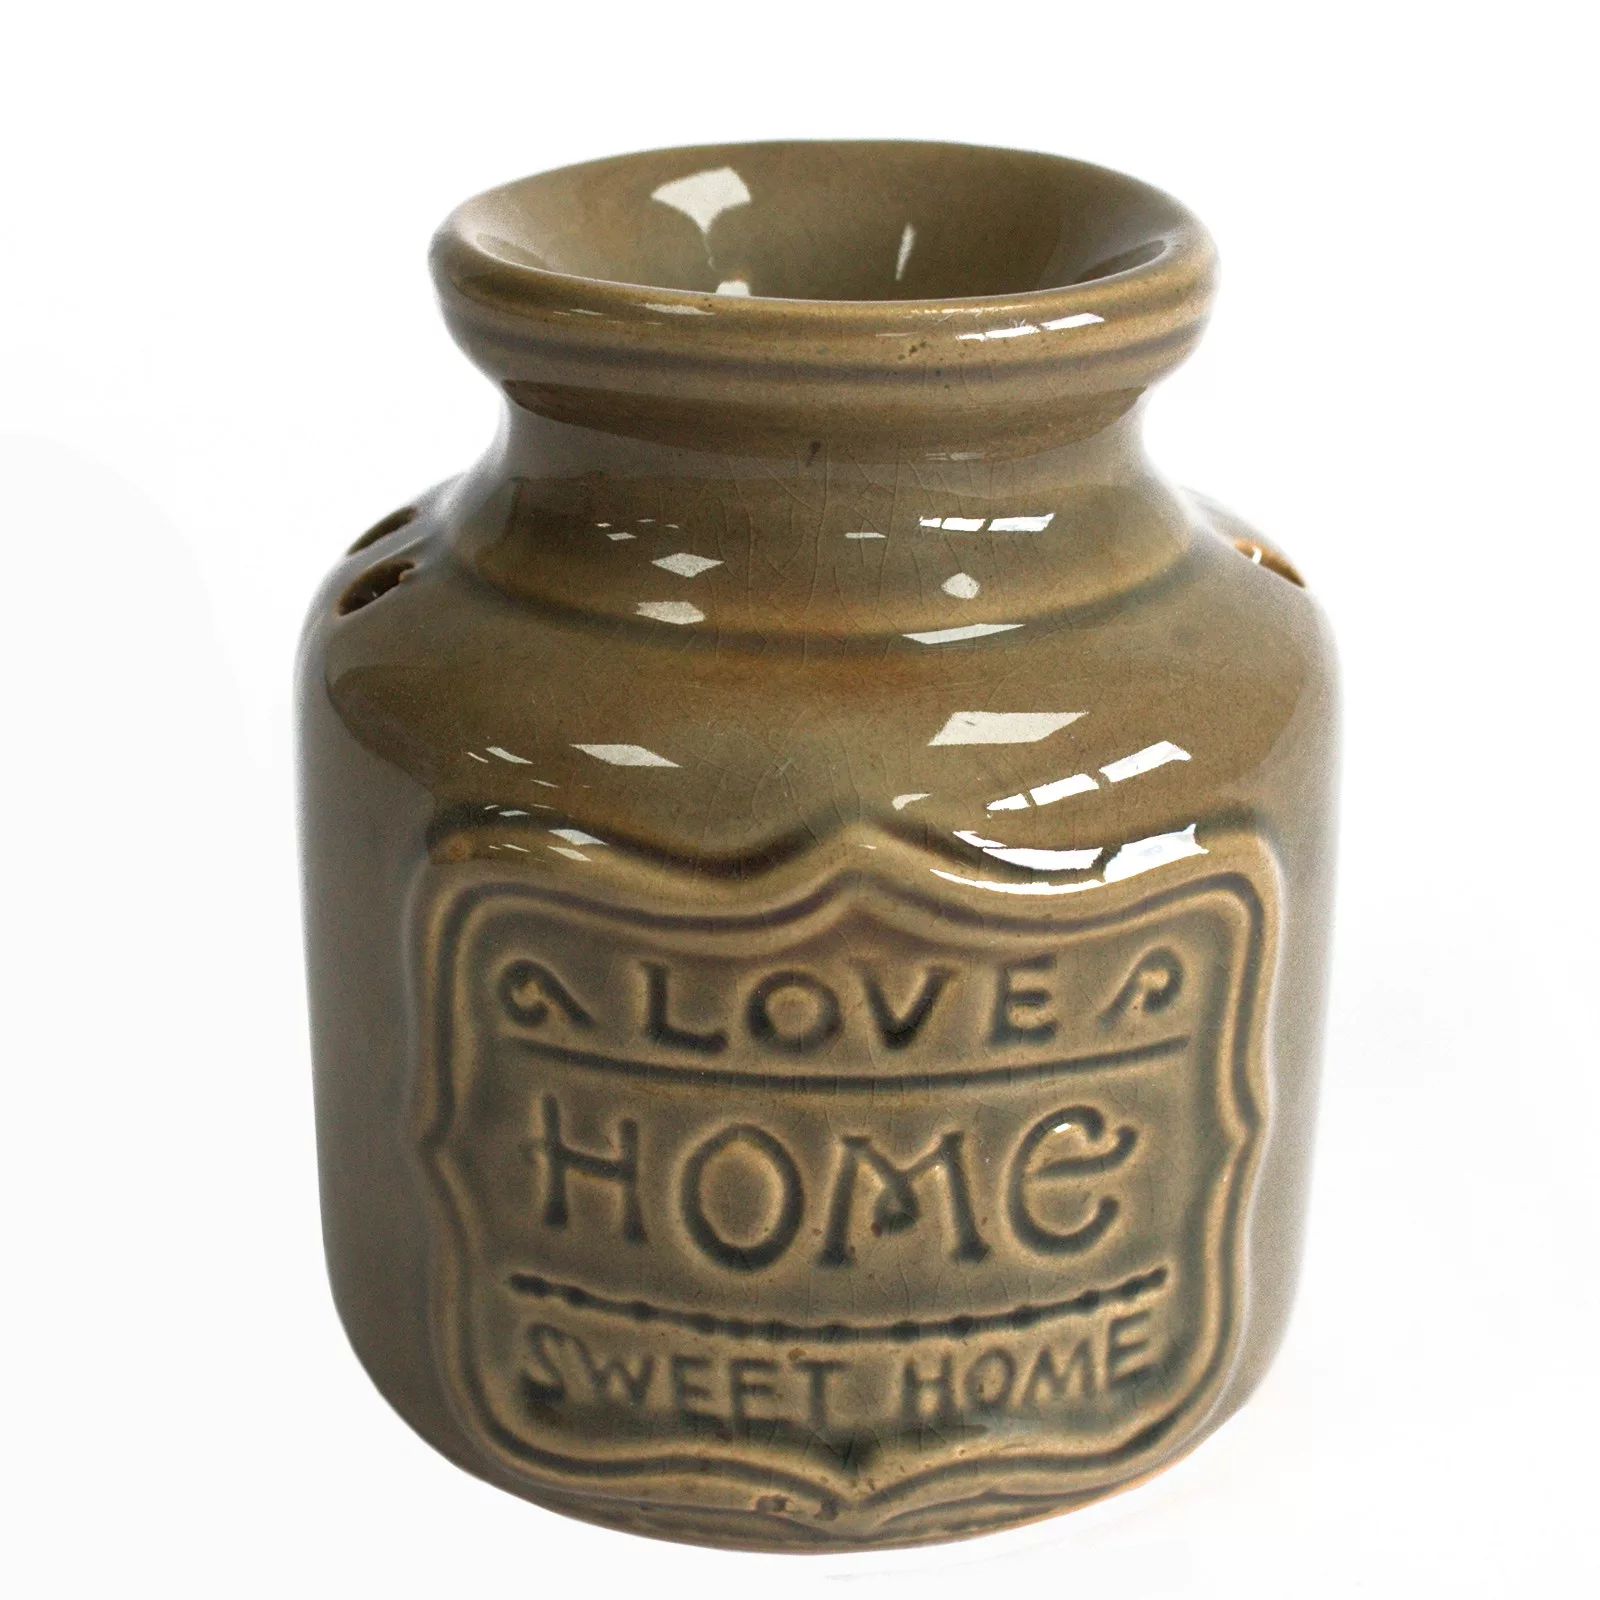 Lrg Home Oil Burner – Love Home Sweet Home